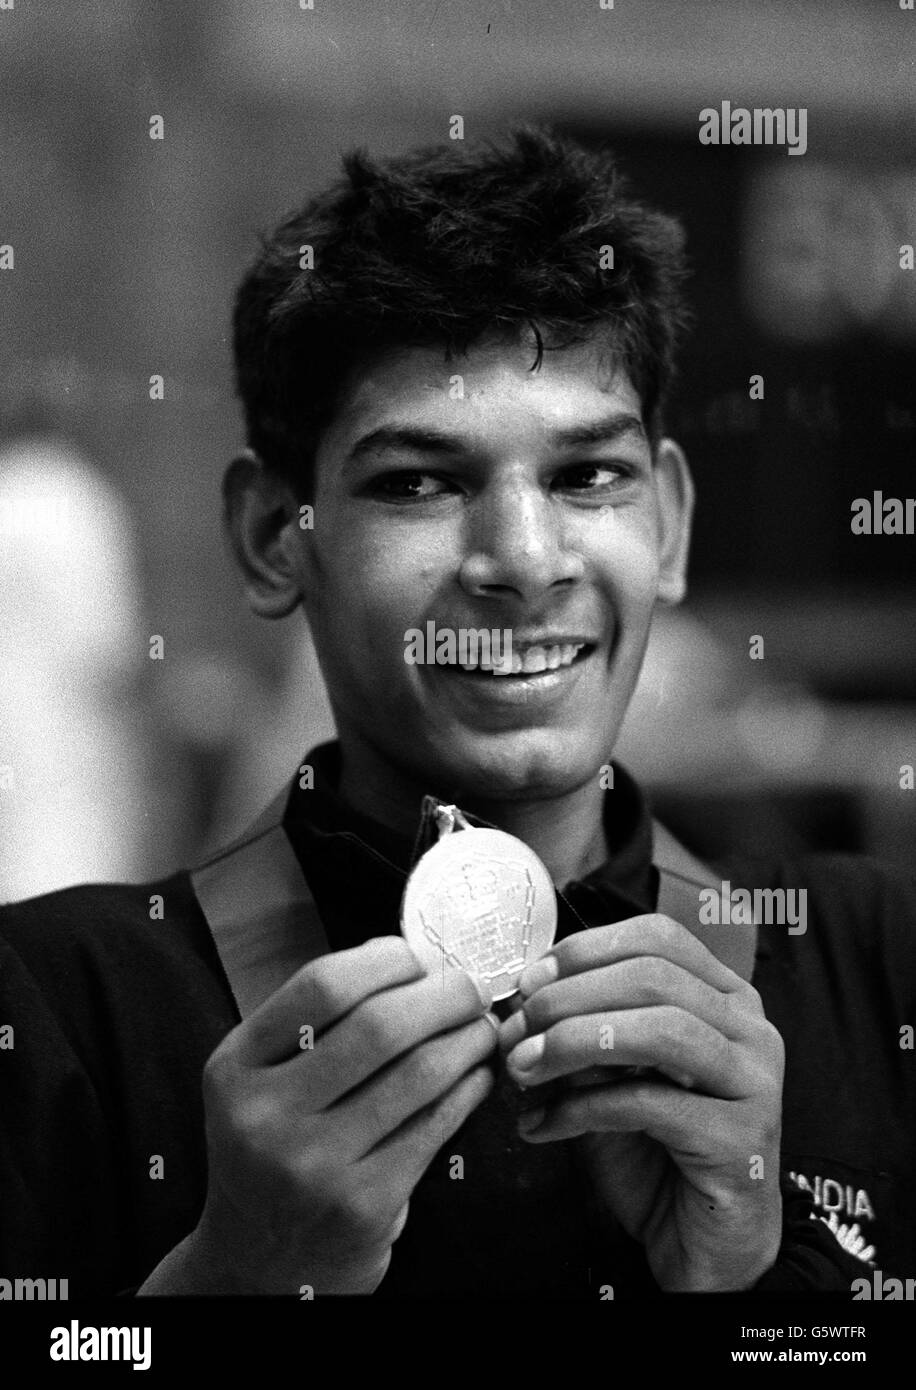 British Commonwealth Games, und einer der jüngsten Goldmedaillengewinner Ved Parkash, 14, der indische Wrestler, der Gold im Leichtgewicht-Finale gegen den kanadischen K Shand gewann. Stockfoto